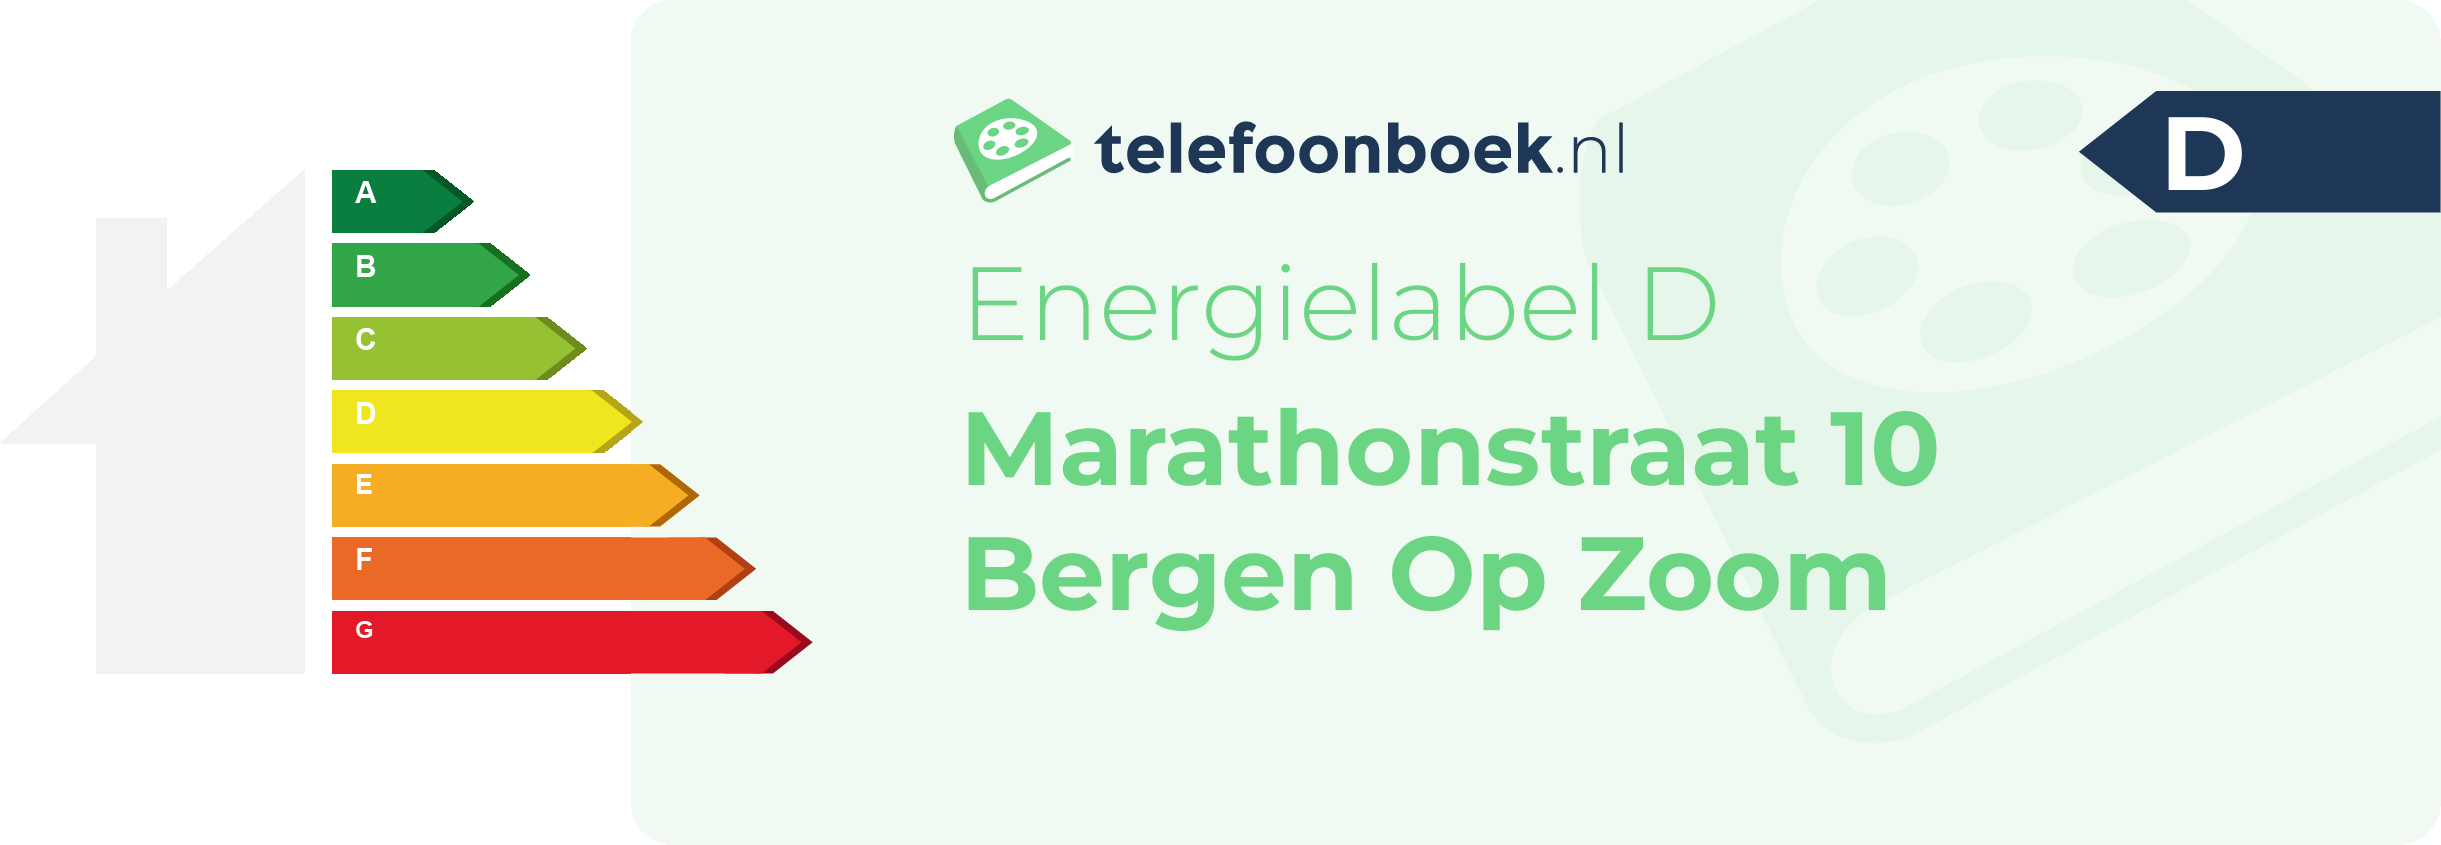 Energielabel Marathonstraat 10 Bergen Op Zoom